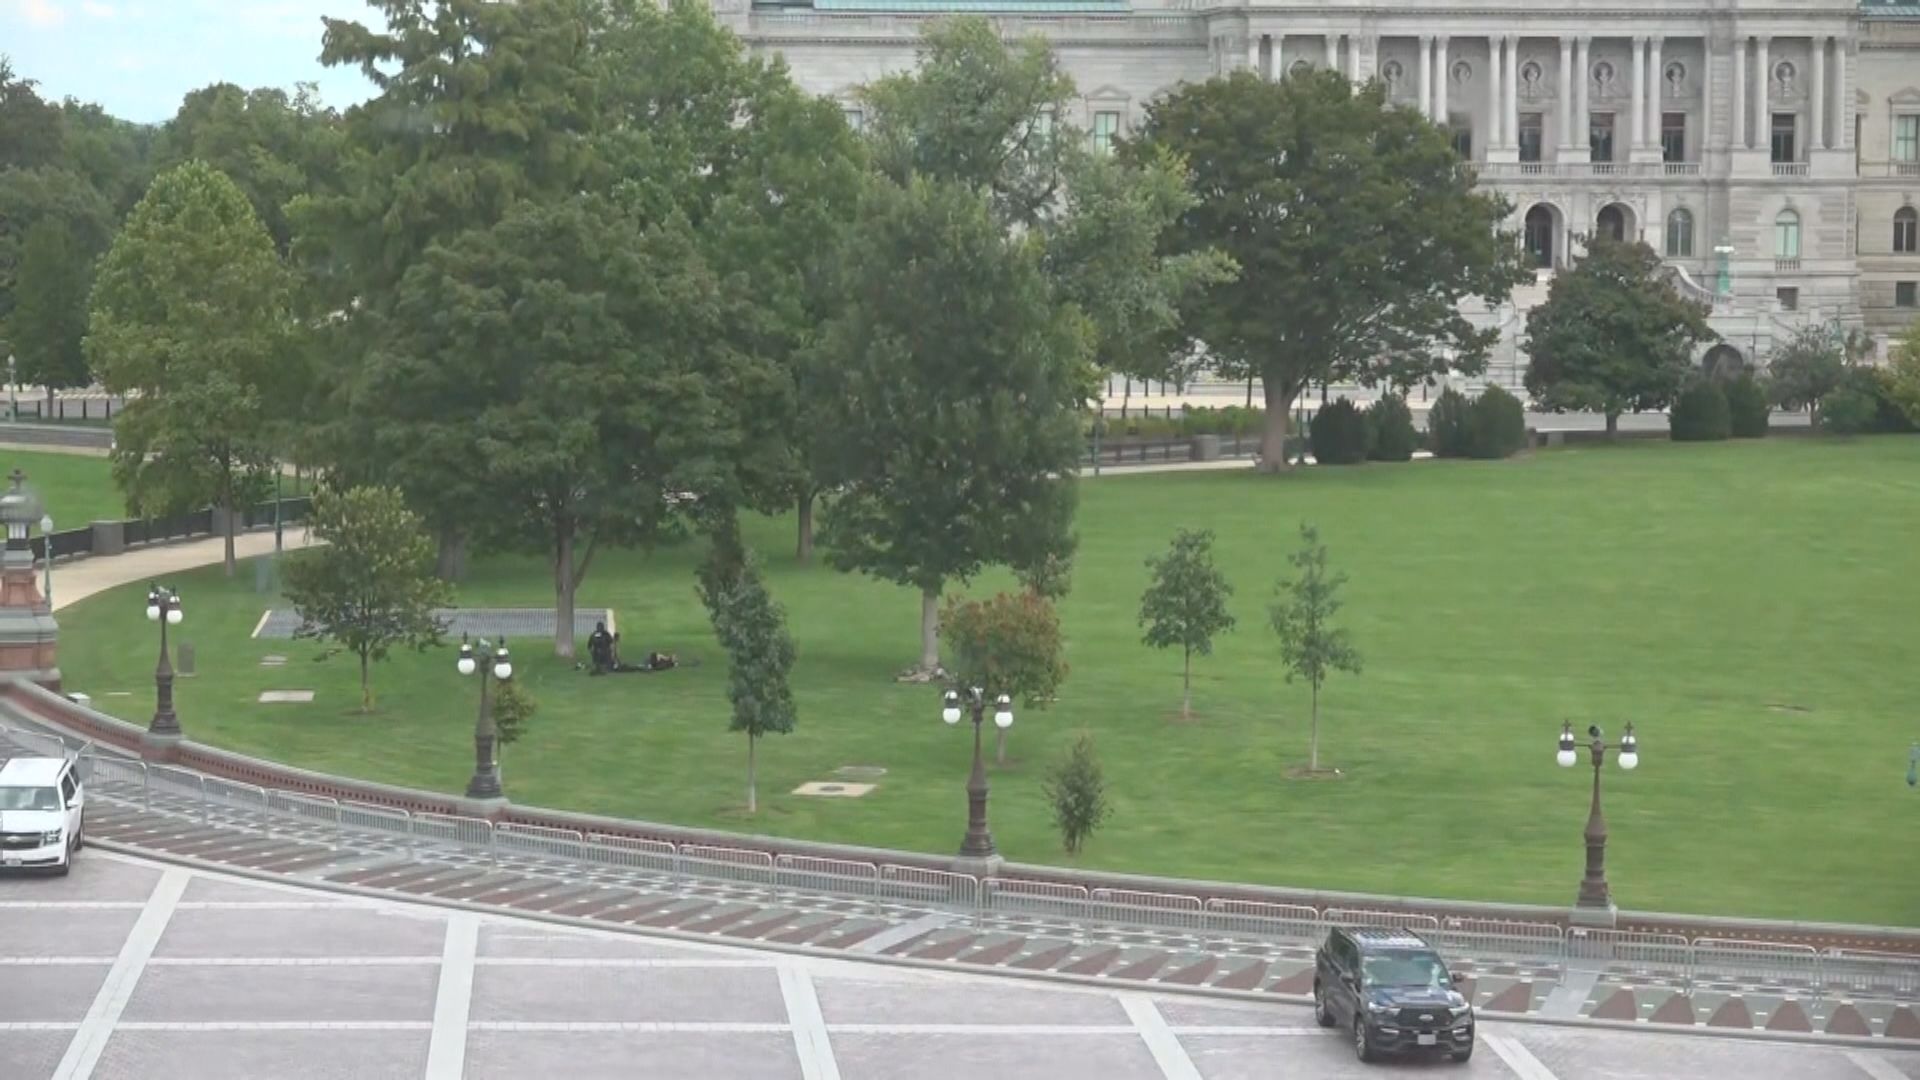 華盛頓國會山莊外男子聲稱有炸彈其後投降被捕